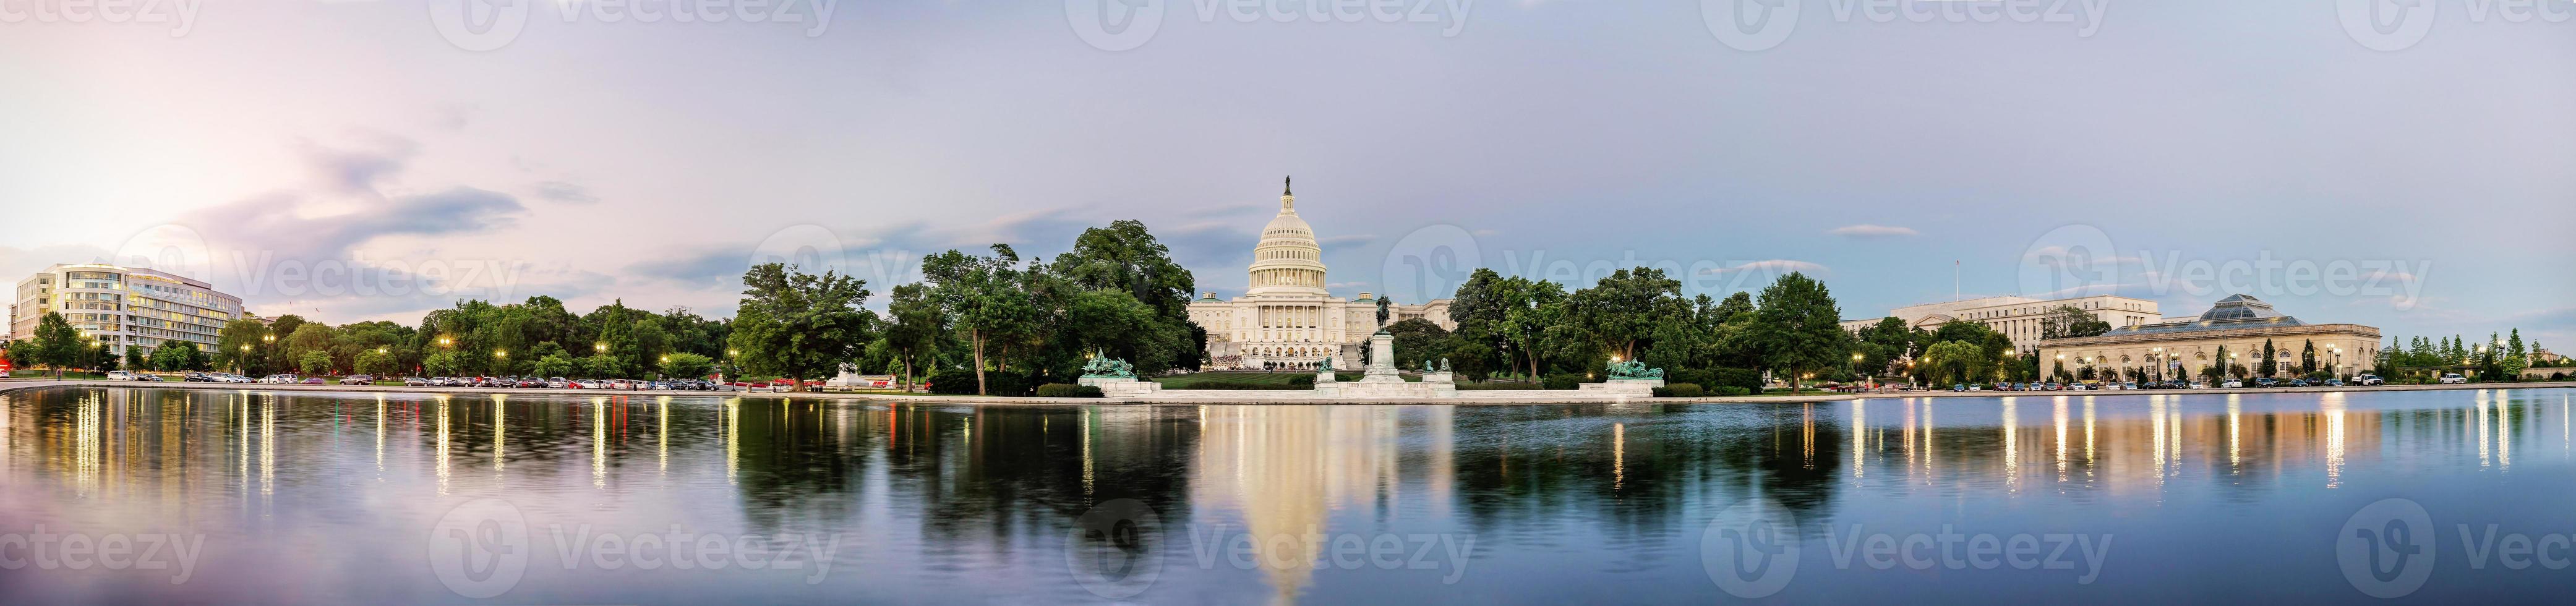 United States Capitol building Washington DC, USA photo